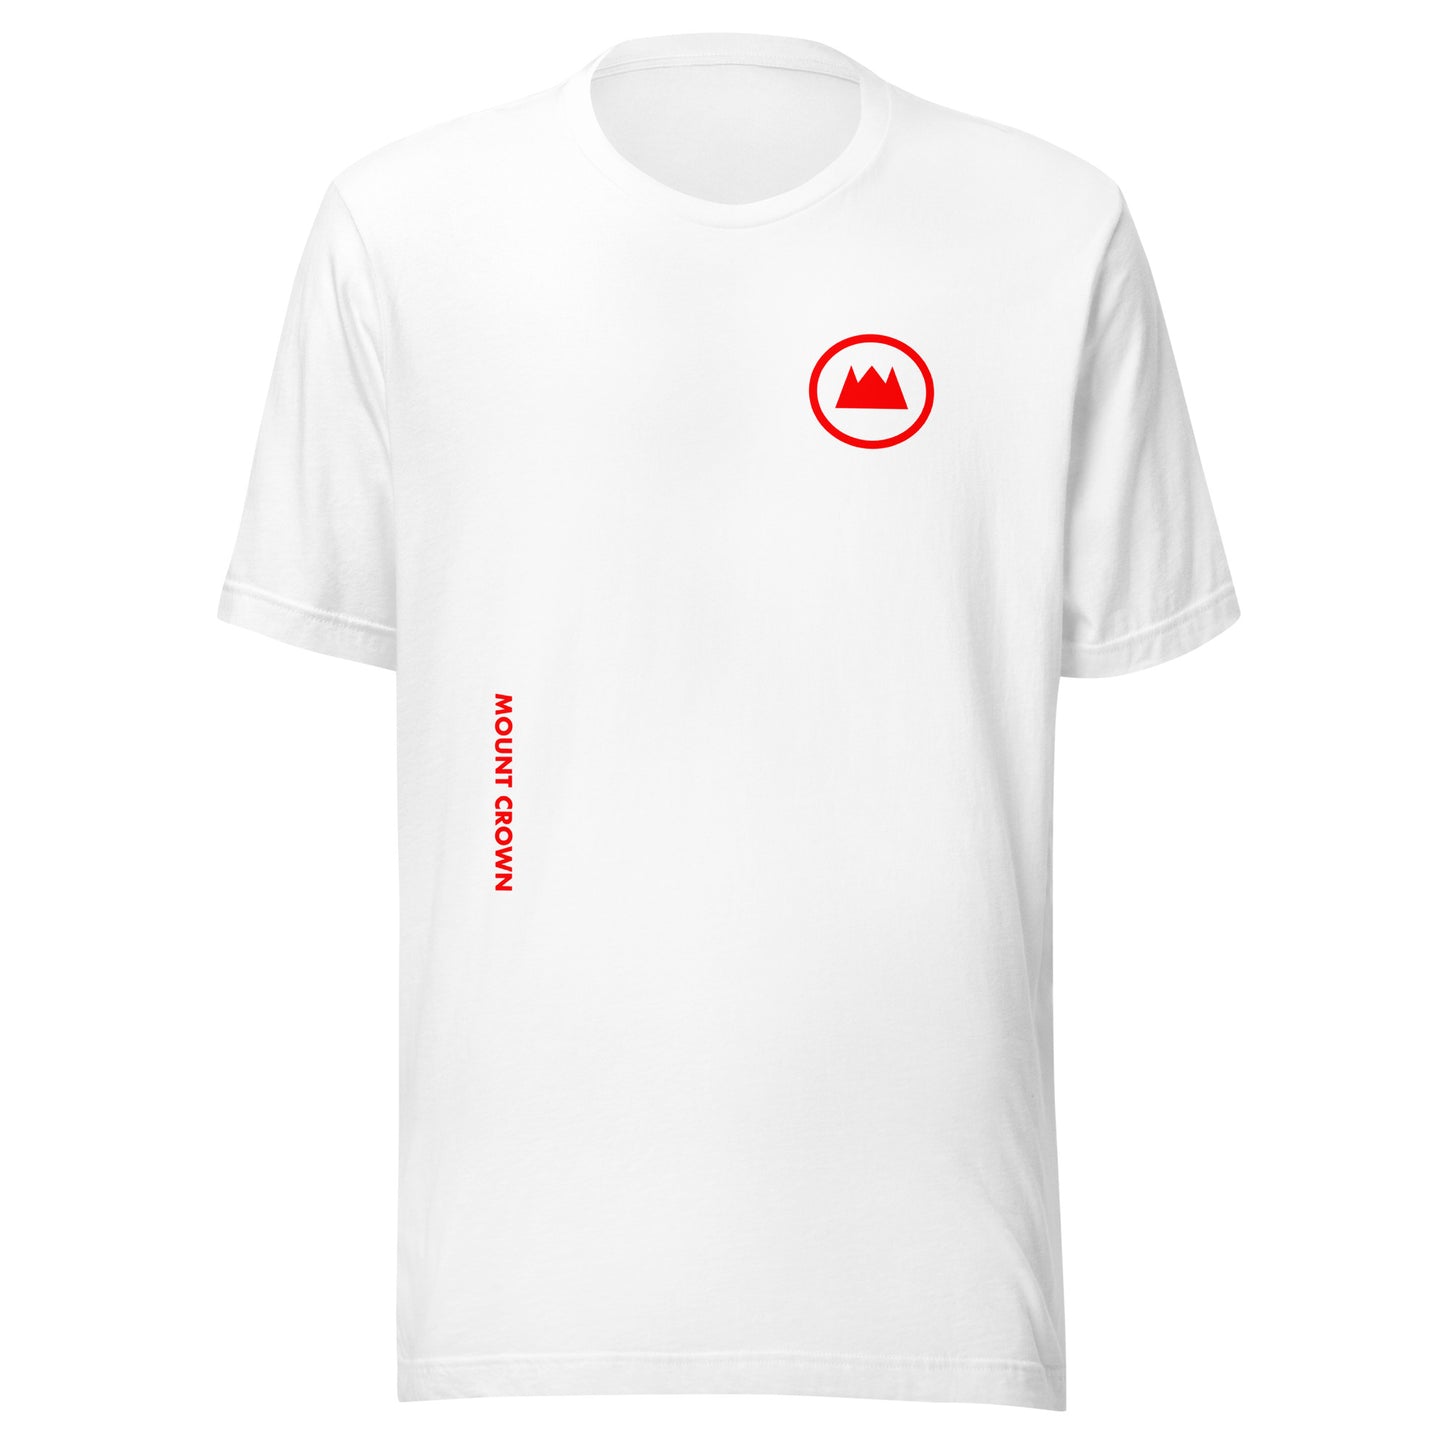 MOUNT CROWN Little Halo (R) Unisex T-shirt